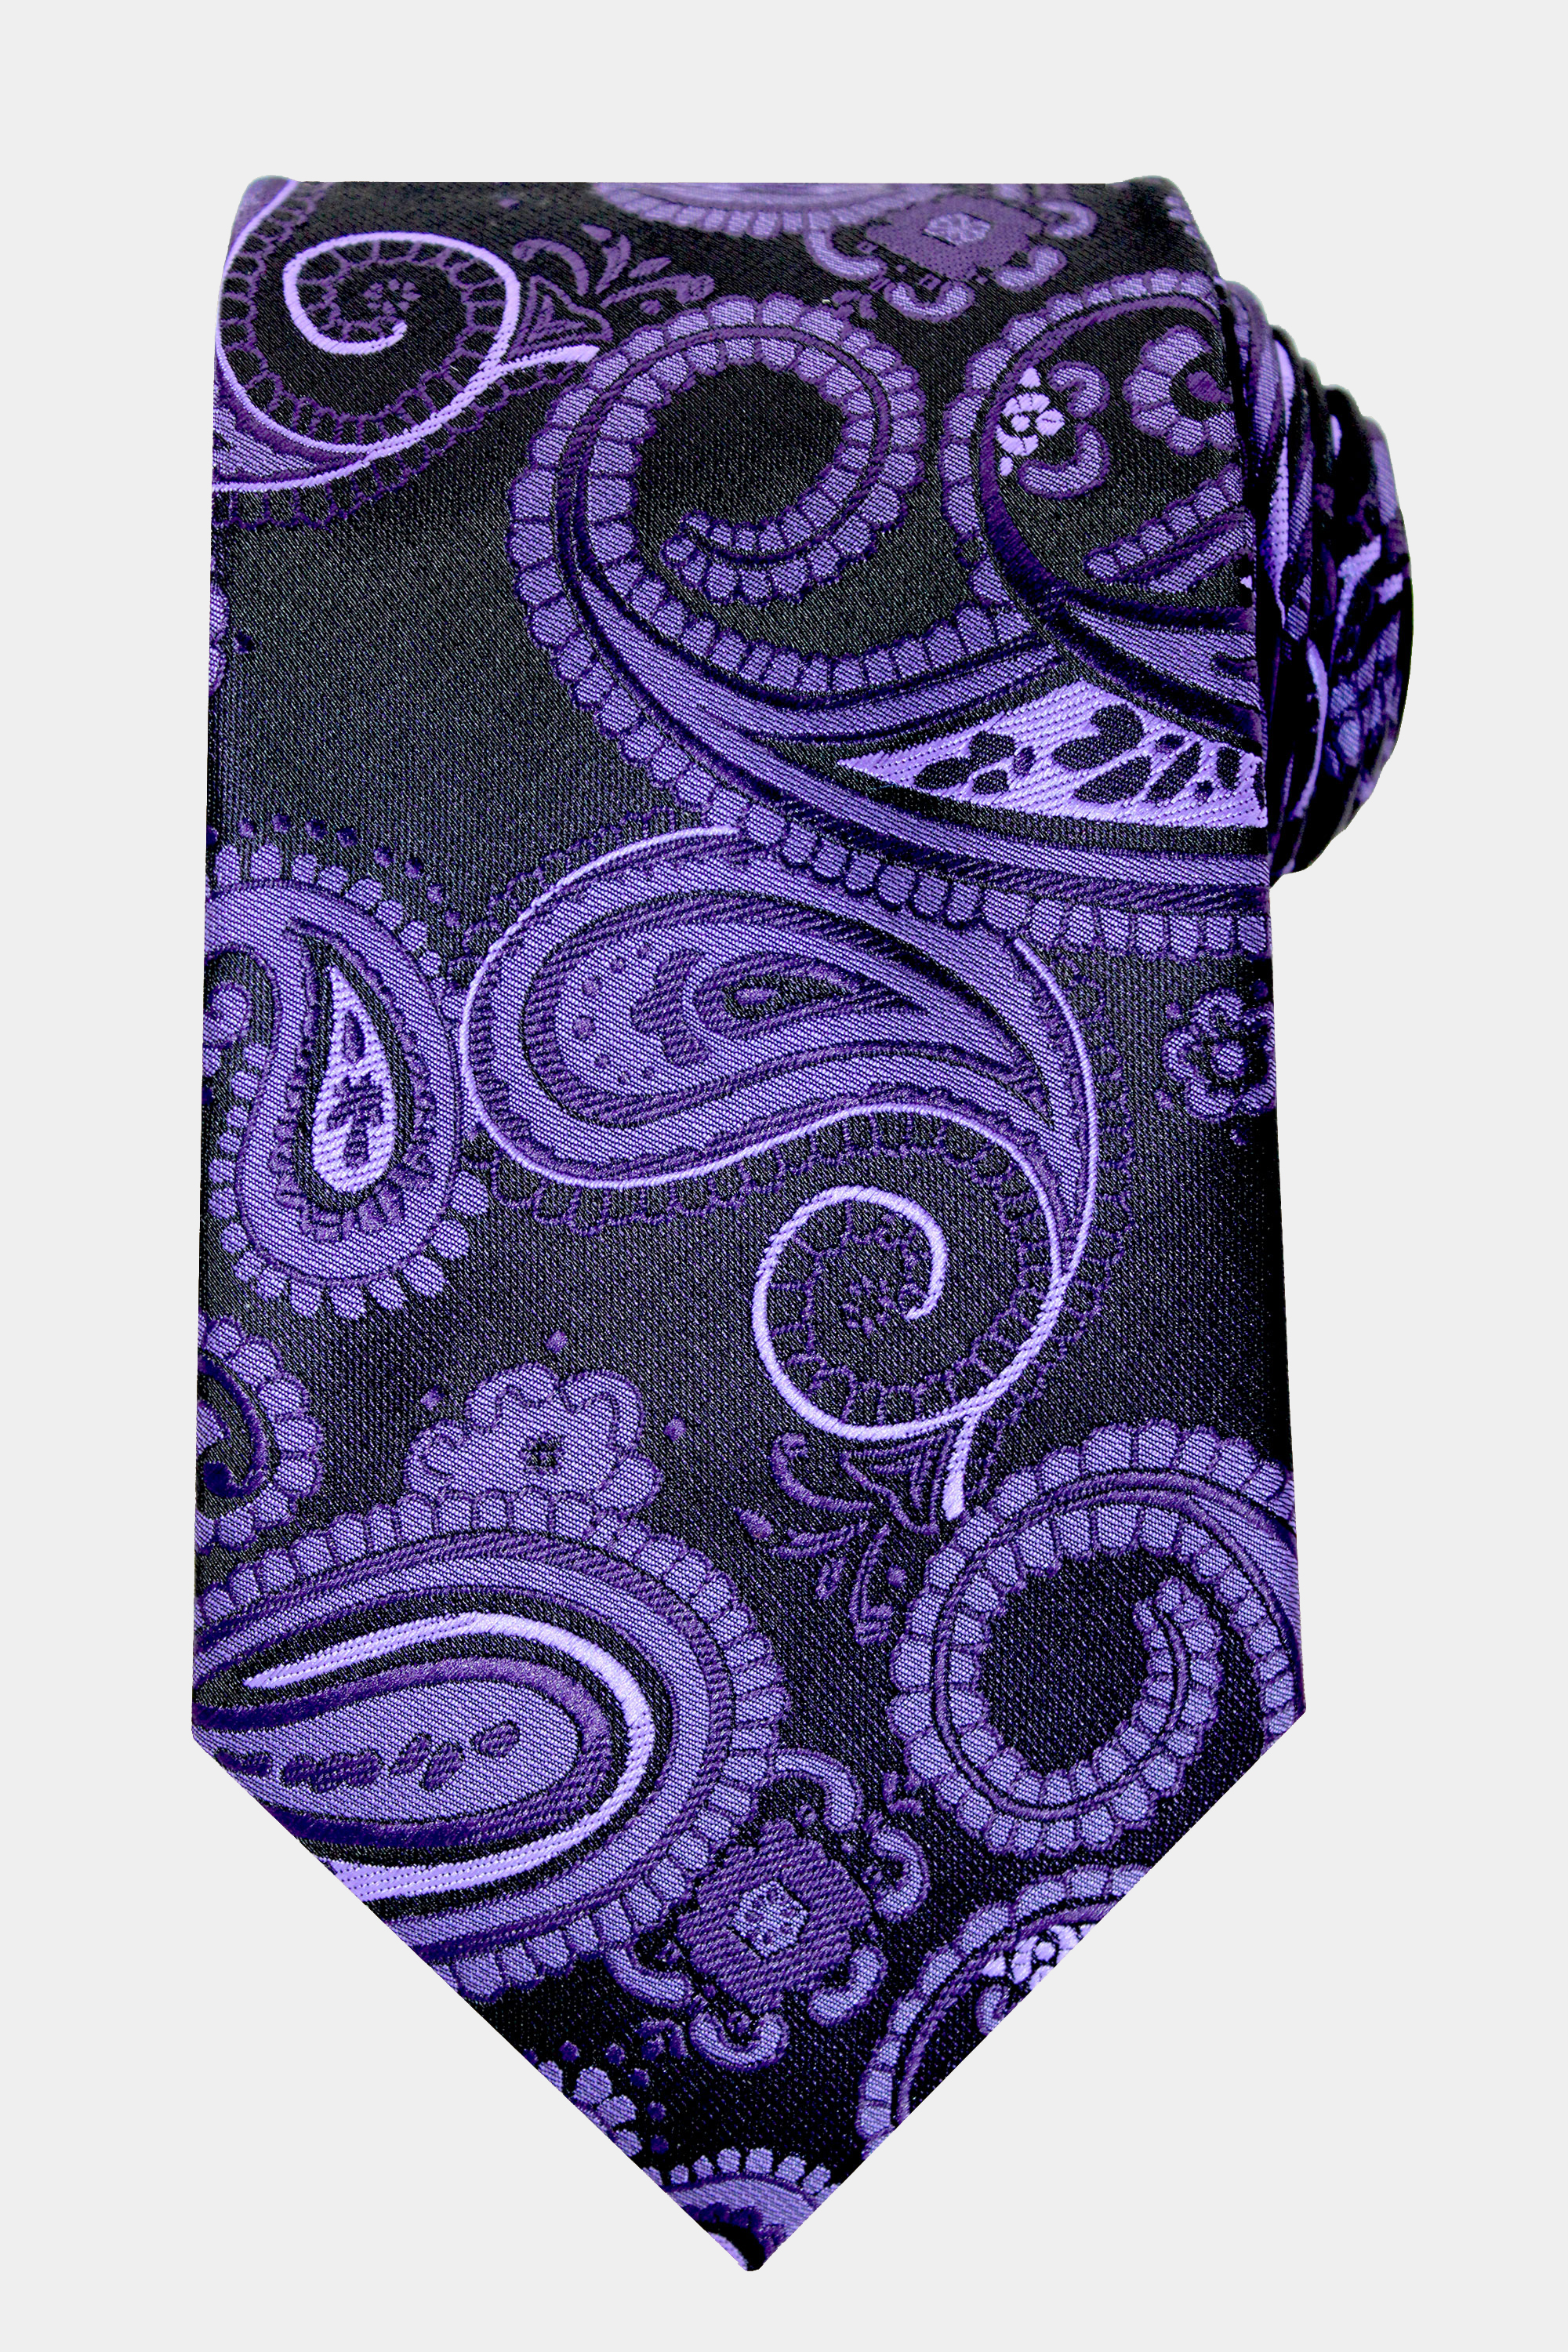 Purple-Paisley-Tie-and-Vest-Set-Tuxedo-Waistcoat-from-Gentlemansguru.com